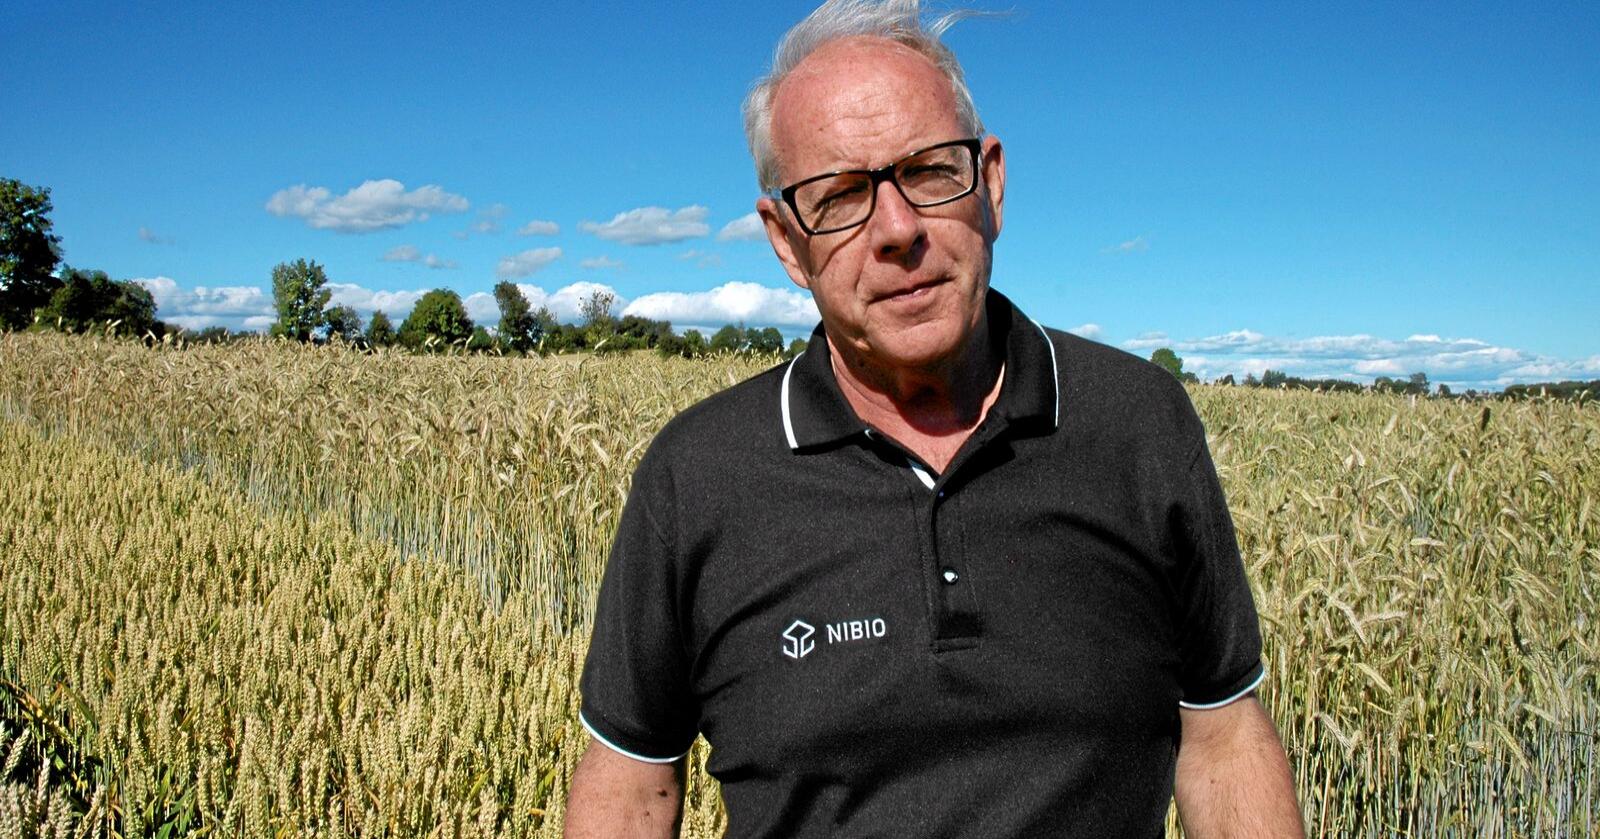 Vi nærmer oss en situasjon der det manglende regnet kan gå ut over avlingsnivået på høstkornet, sier Einar Strand i Norsk landbruksrådgivning. Arkivfoto: Jon Schärer.